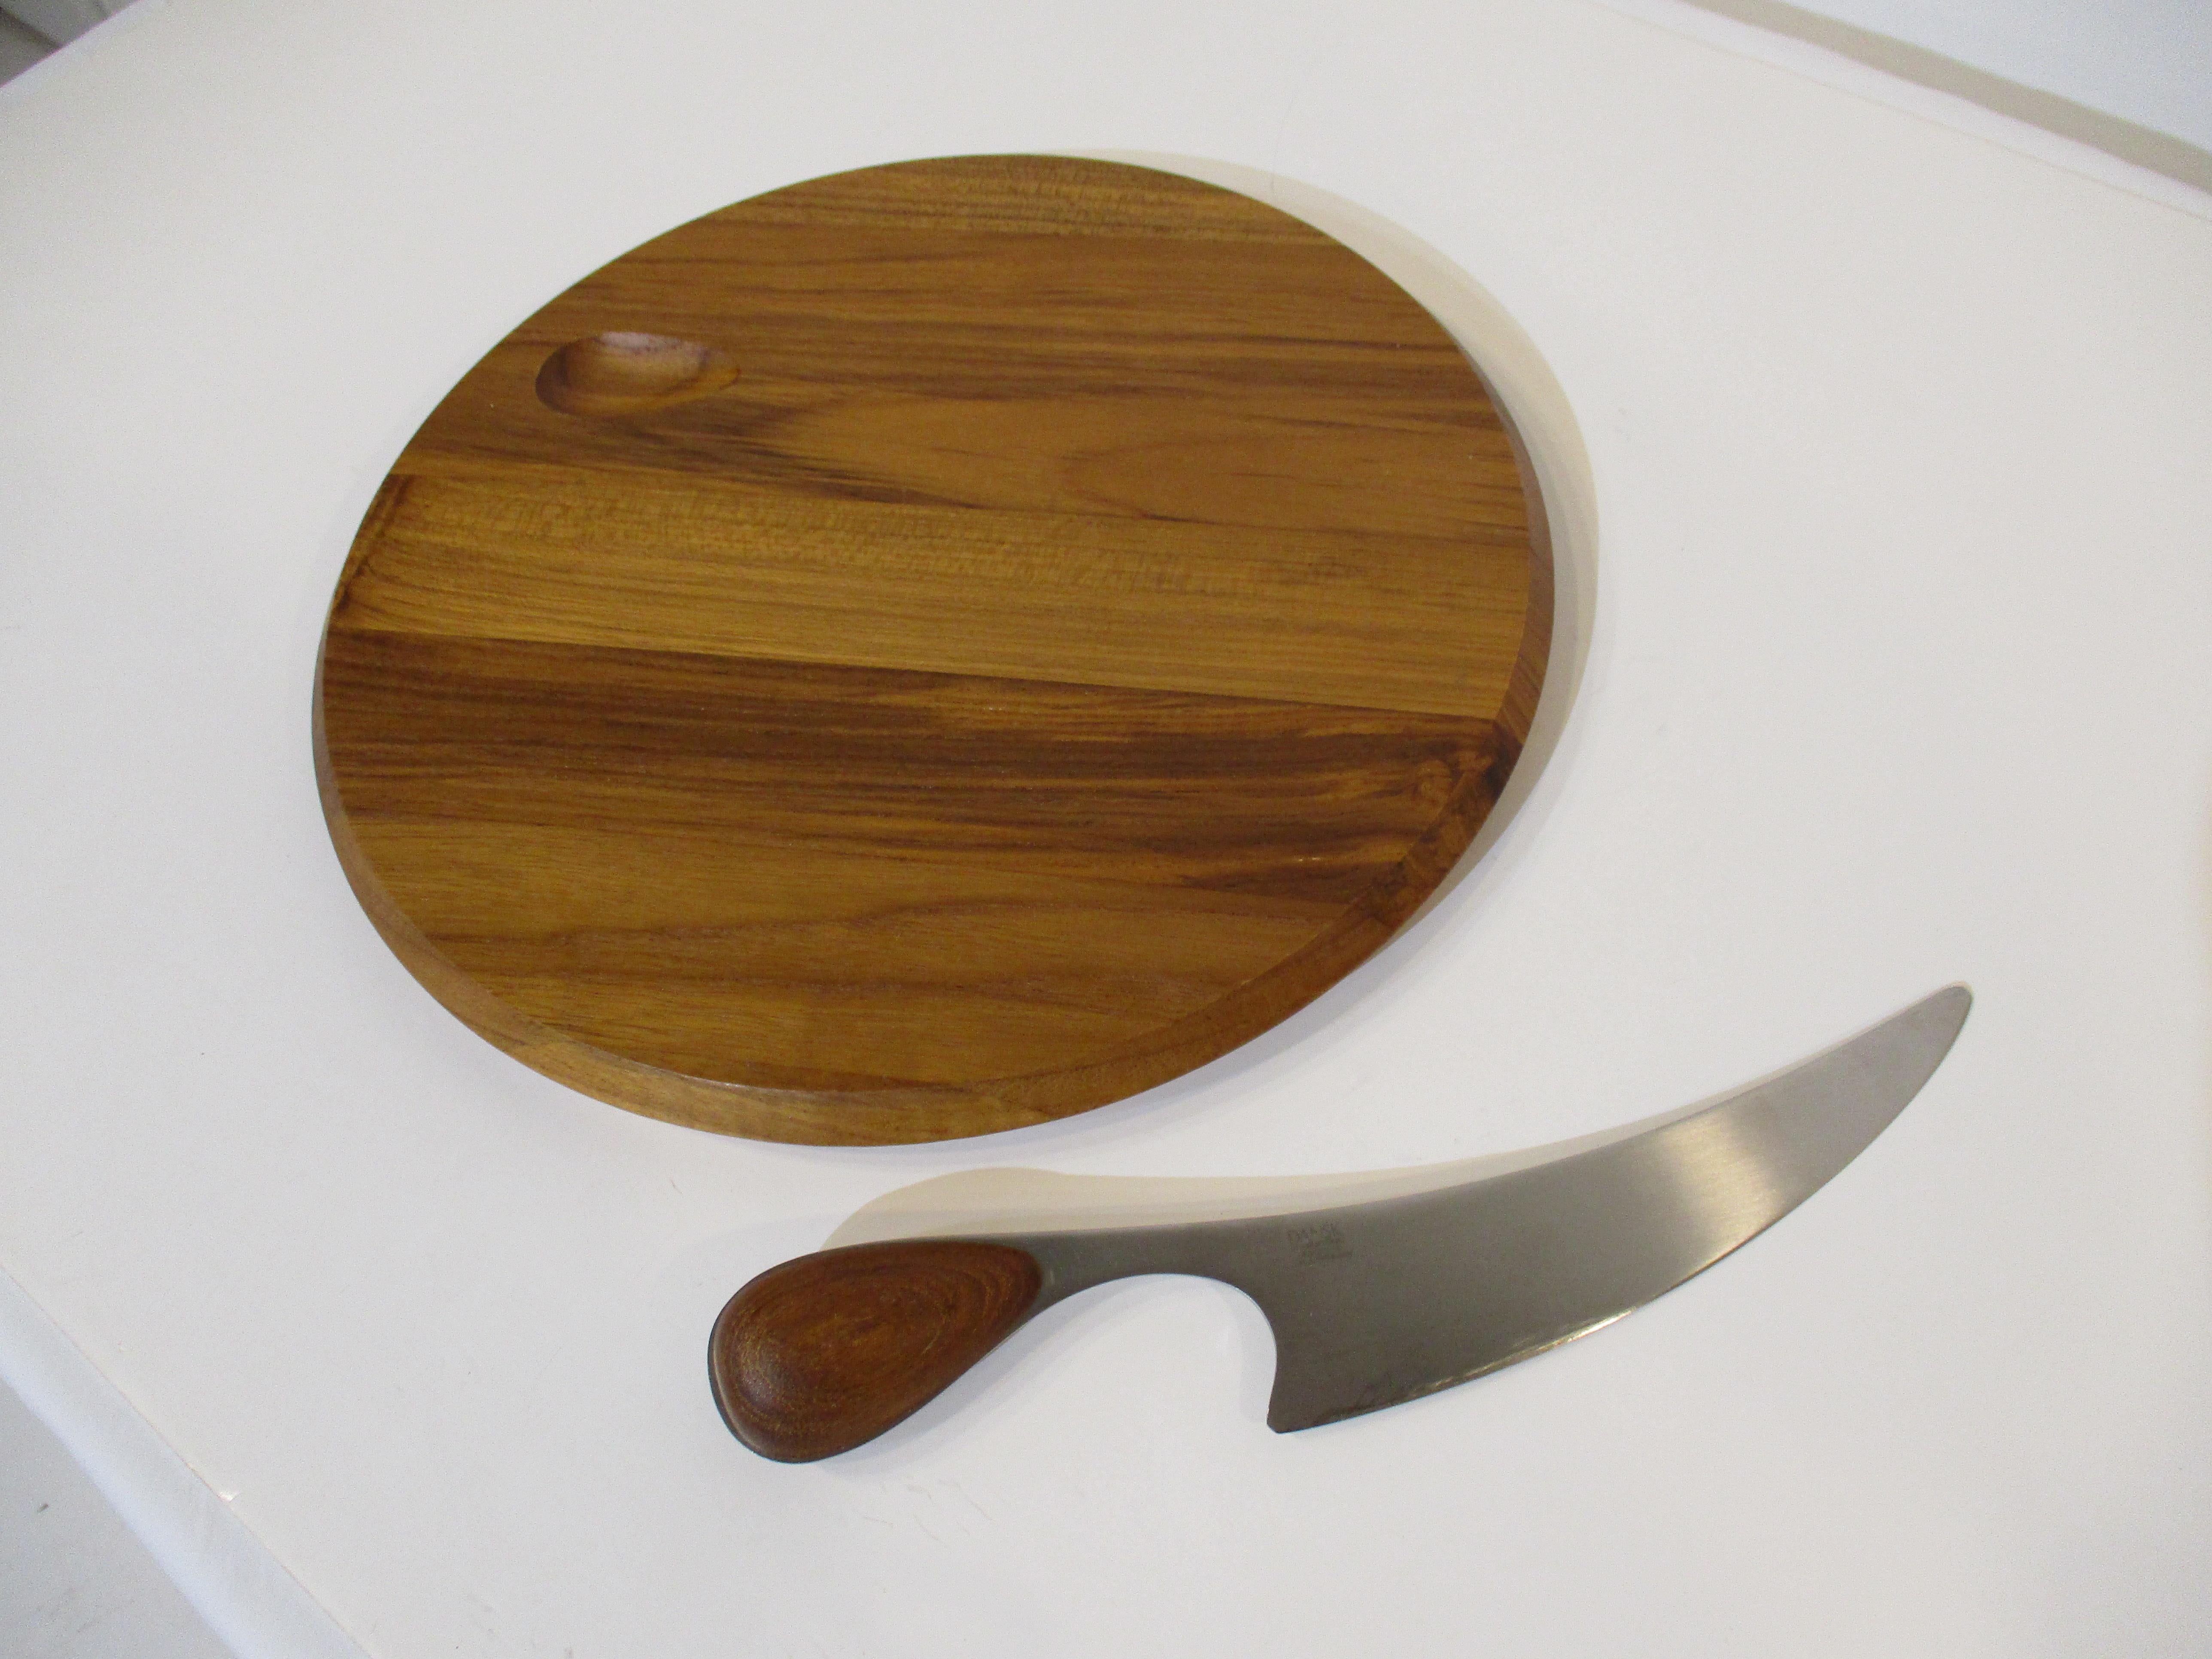 Un plateau à fromage en bois de teck très bien travaillé avec une zone sculptée sur le bord supérieur du plateau pour le manche du couteau. Le grand couteau à lame courbe en acier inoxydable est doté d'un manche en teck assorti. Le bord de la lame